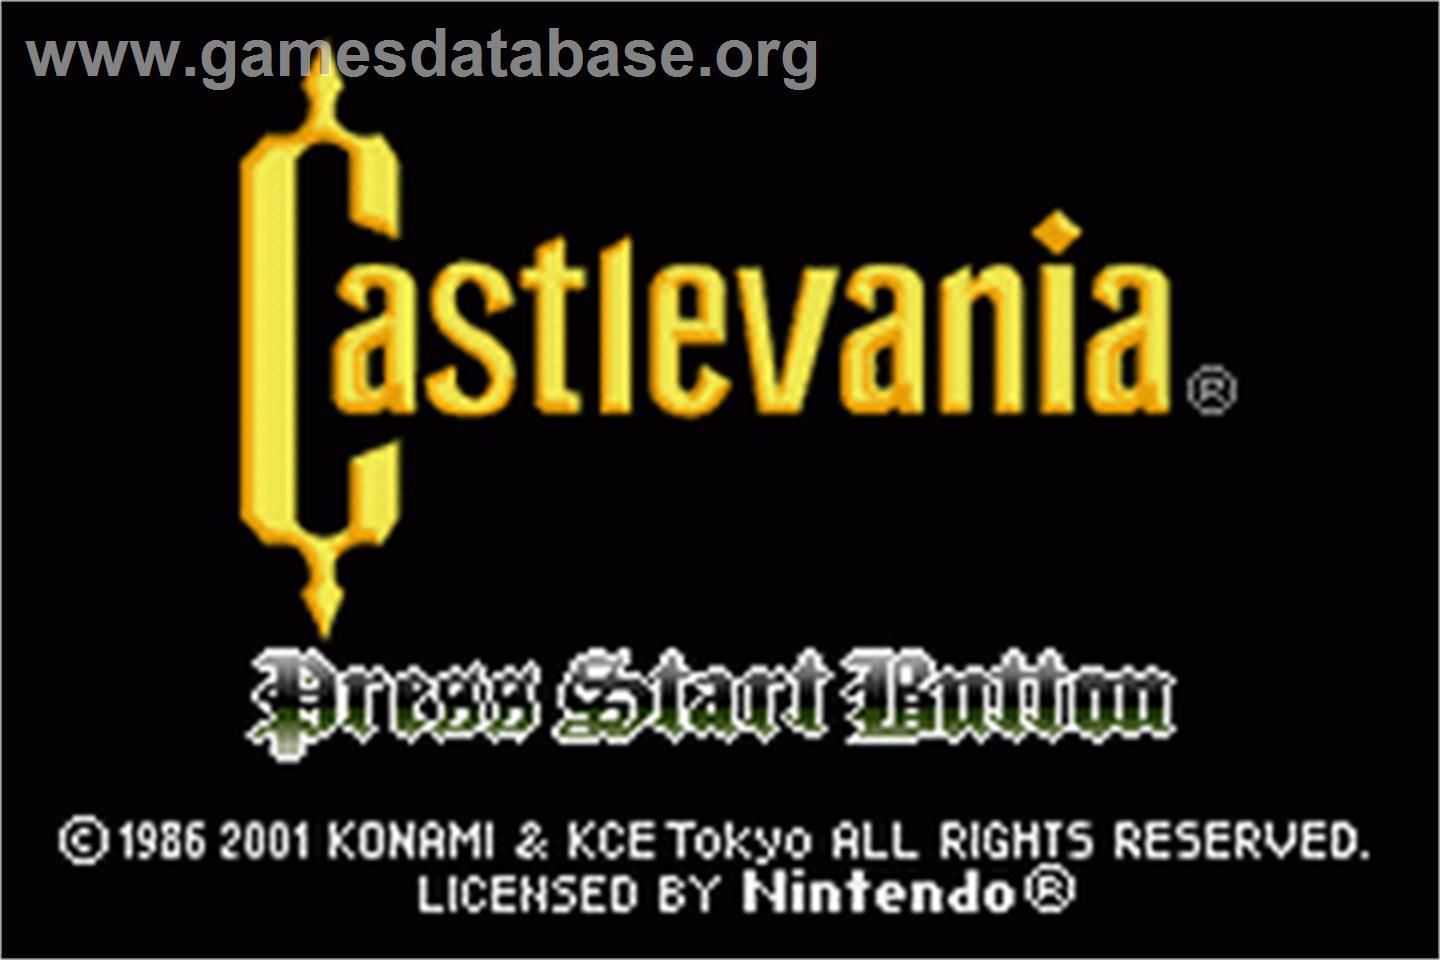 Castlevania - Nintendo Game Boy Advance - Artwork - Title Screen